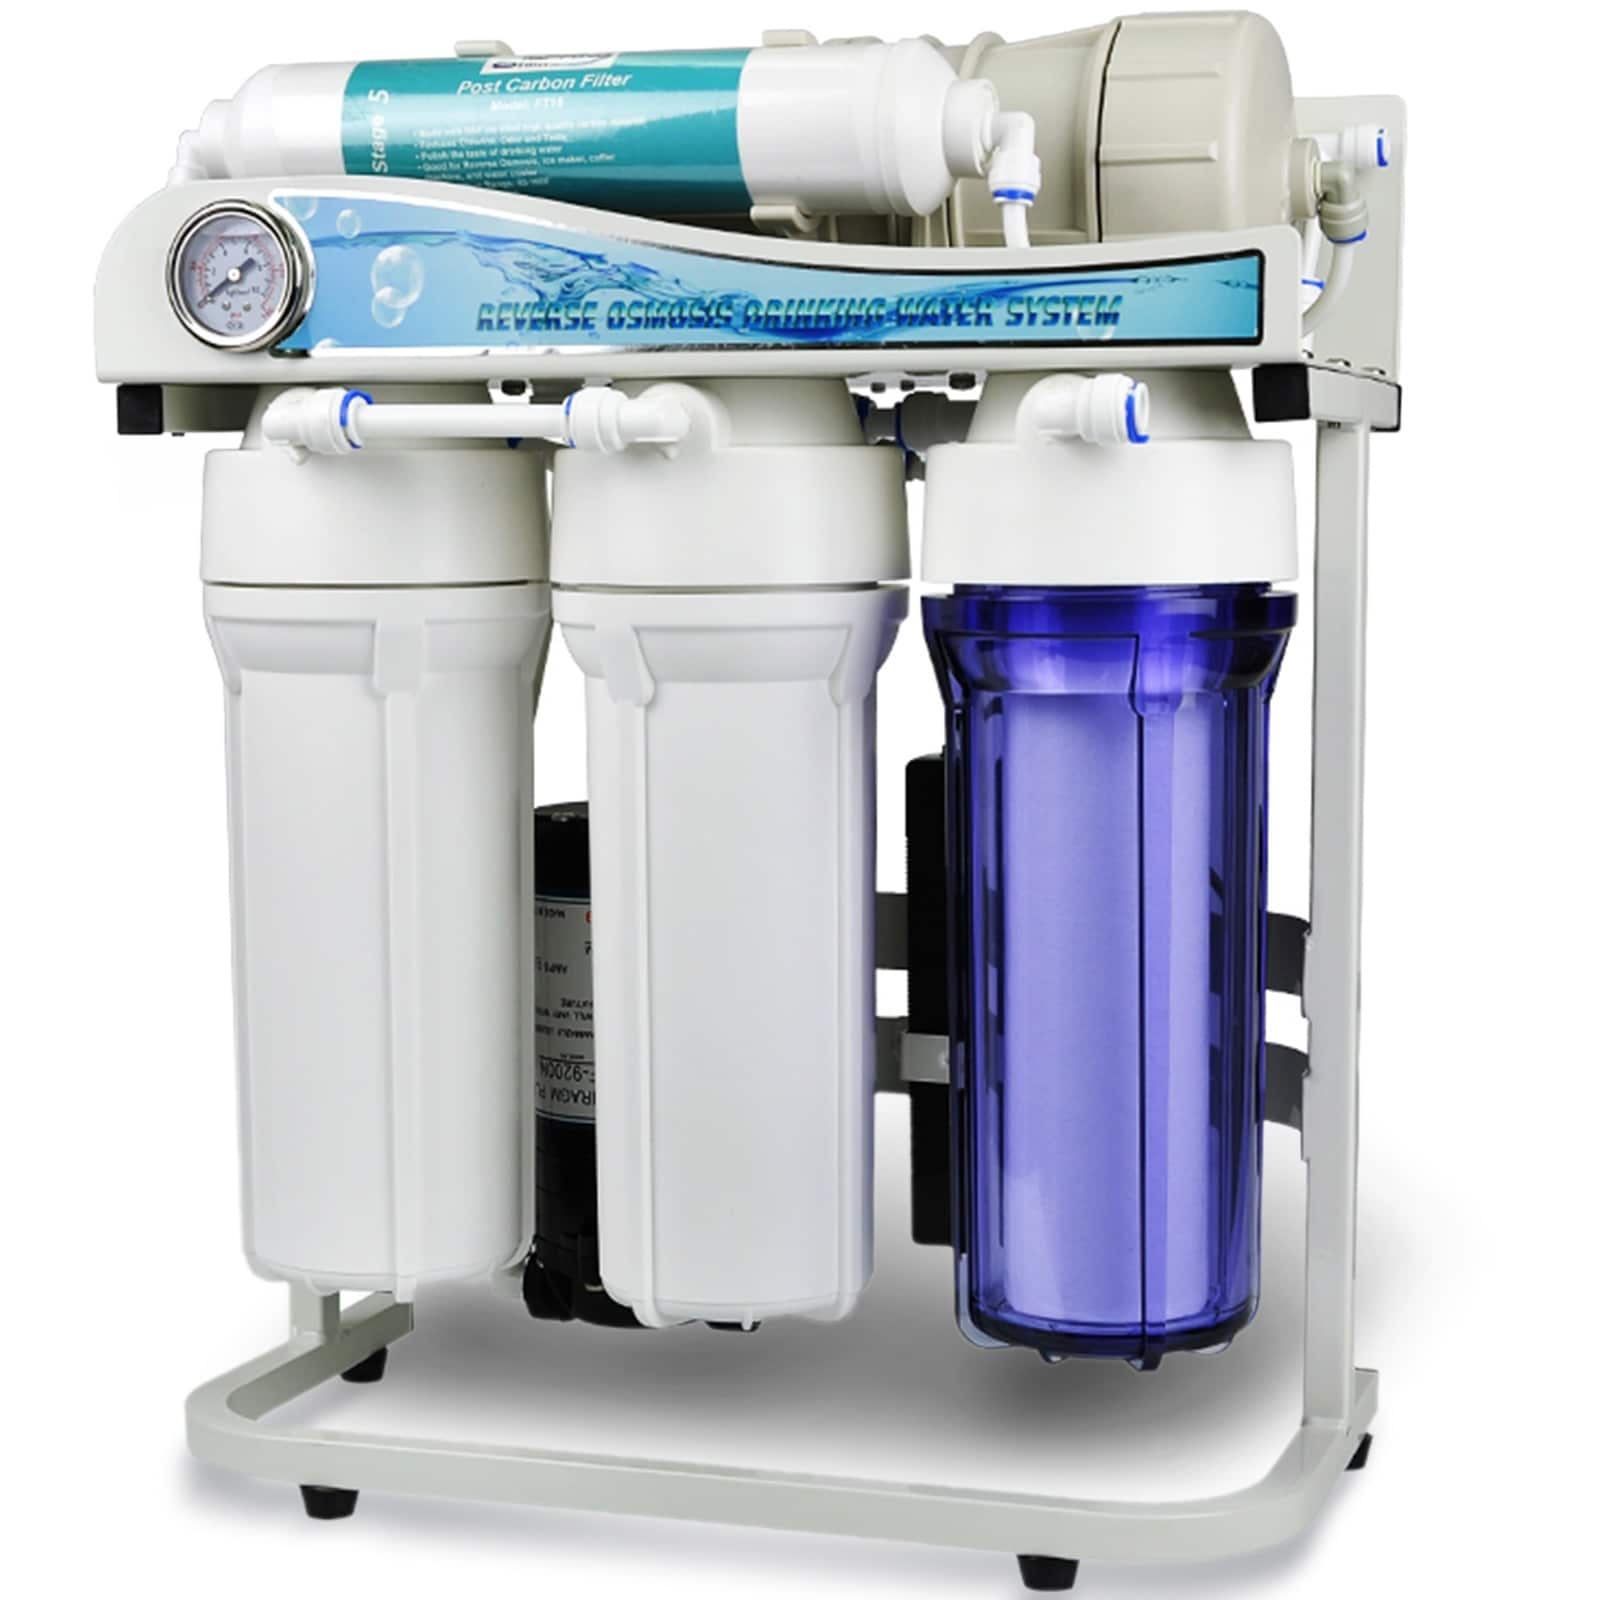 Автомат фильтр воды. Фильтры Water quality Reverse Osmosis System. Ro-600 обратный осмос. Фильтр для воды Reverse Osmosis. Фильтр обратного осмоса 75.